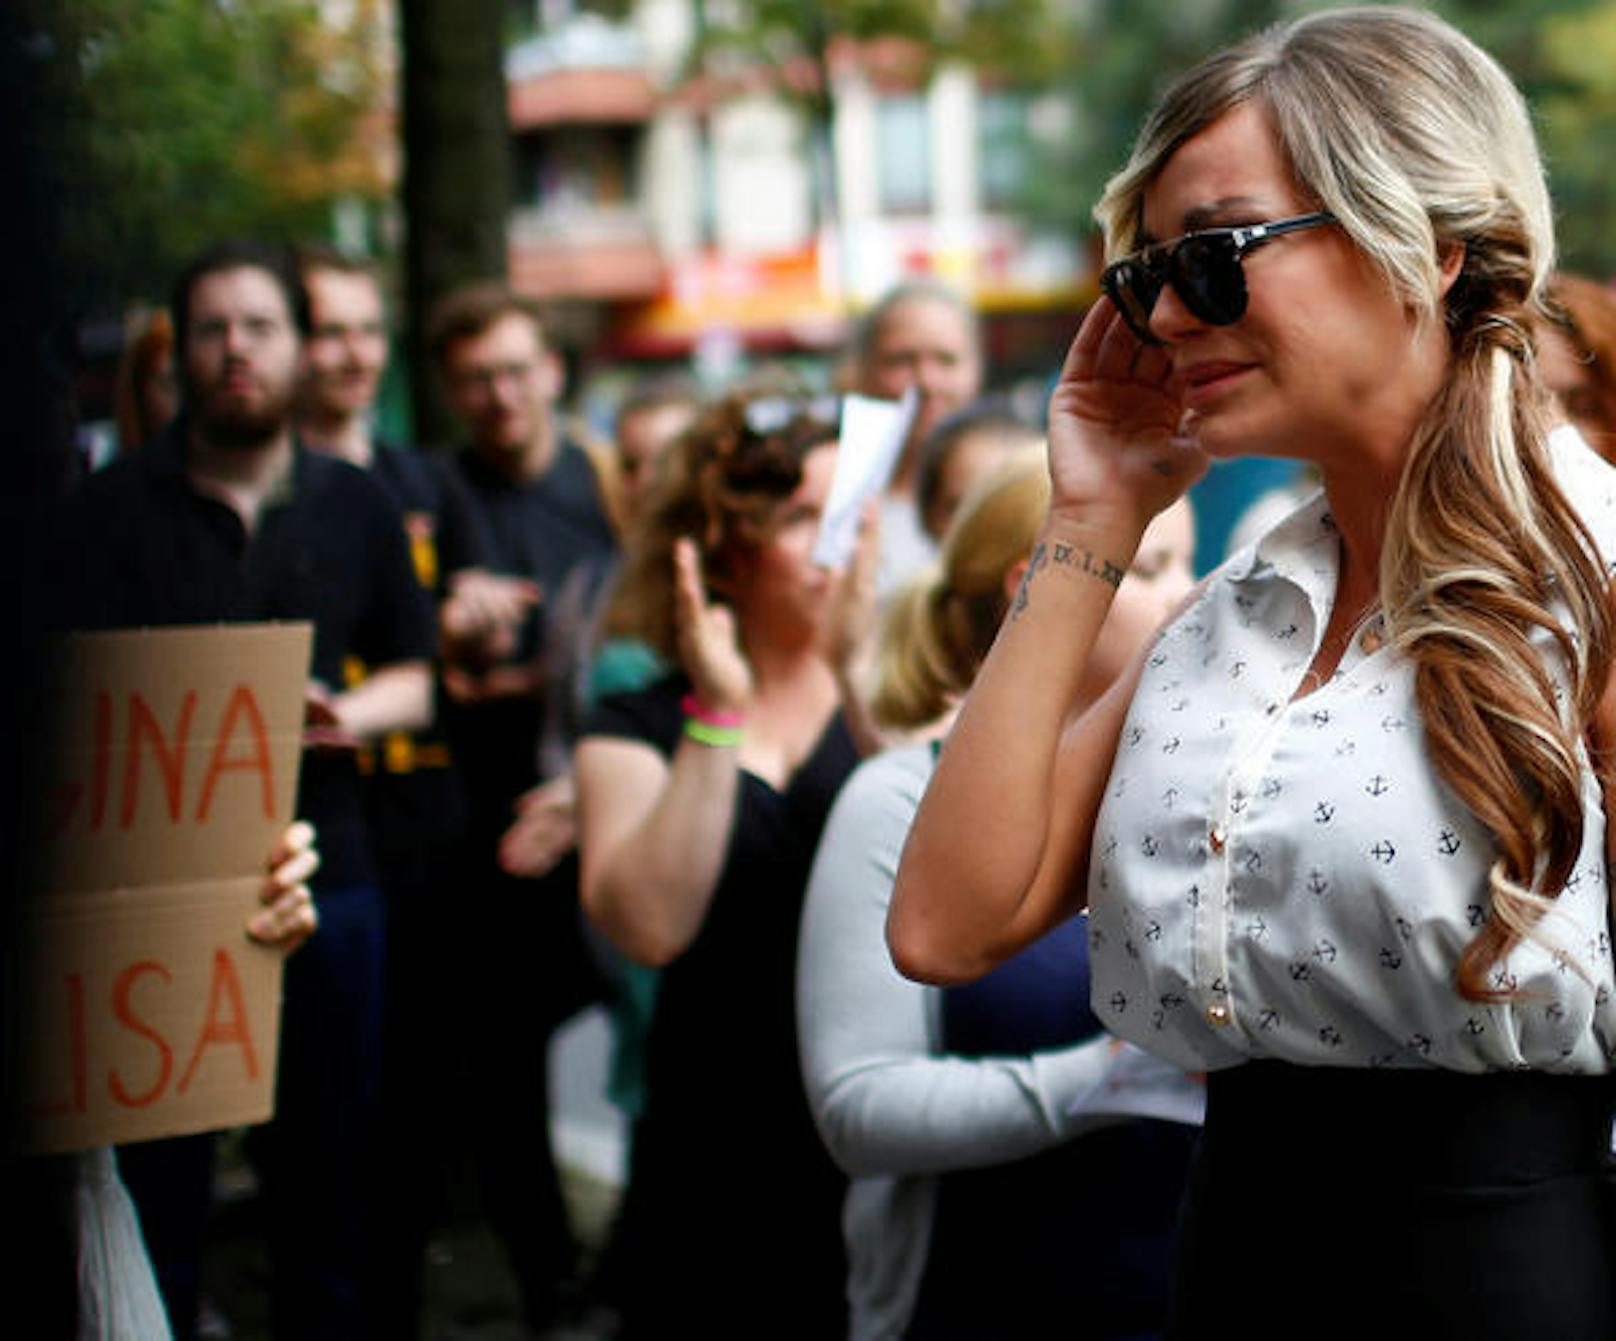 Gina-Lisa Lohfink kämpfte vor dem Gerichtsgebäude in Berlin mit den Tränen. Rund ein Dutzend Unterstützer der "No is No"-Bewegung empfingen die ehemalige Kandidatin von "Germany's Next Topmodel".